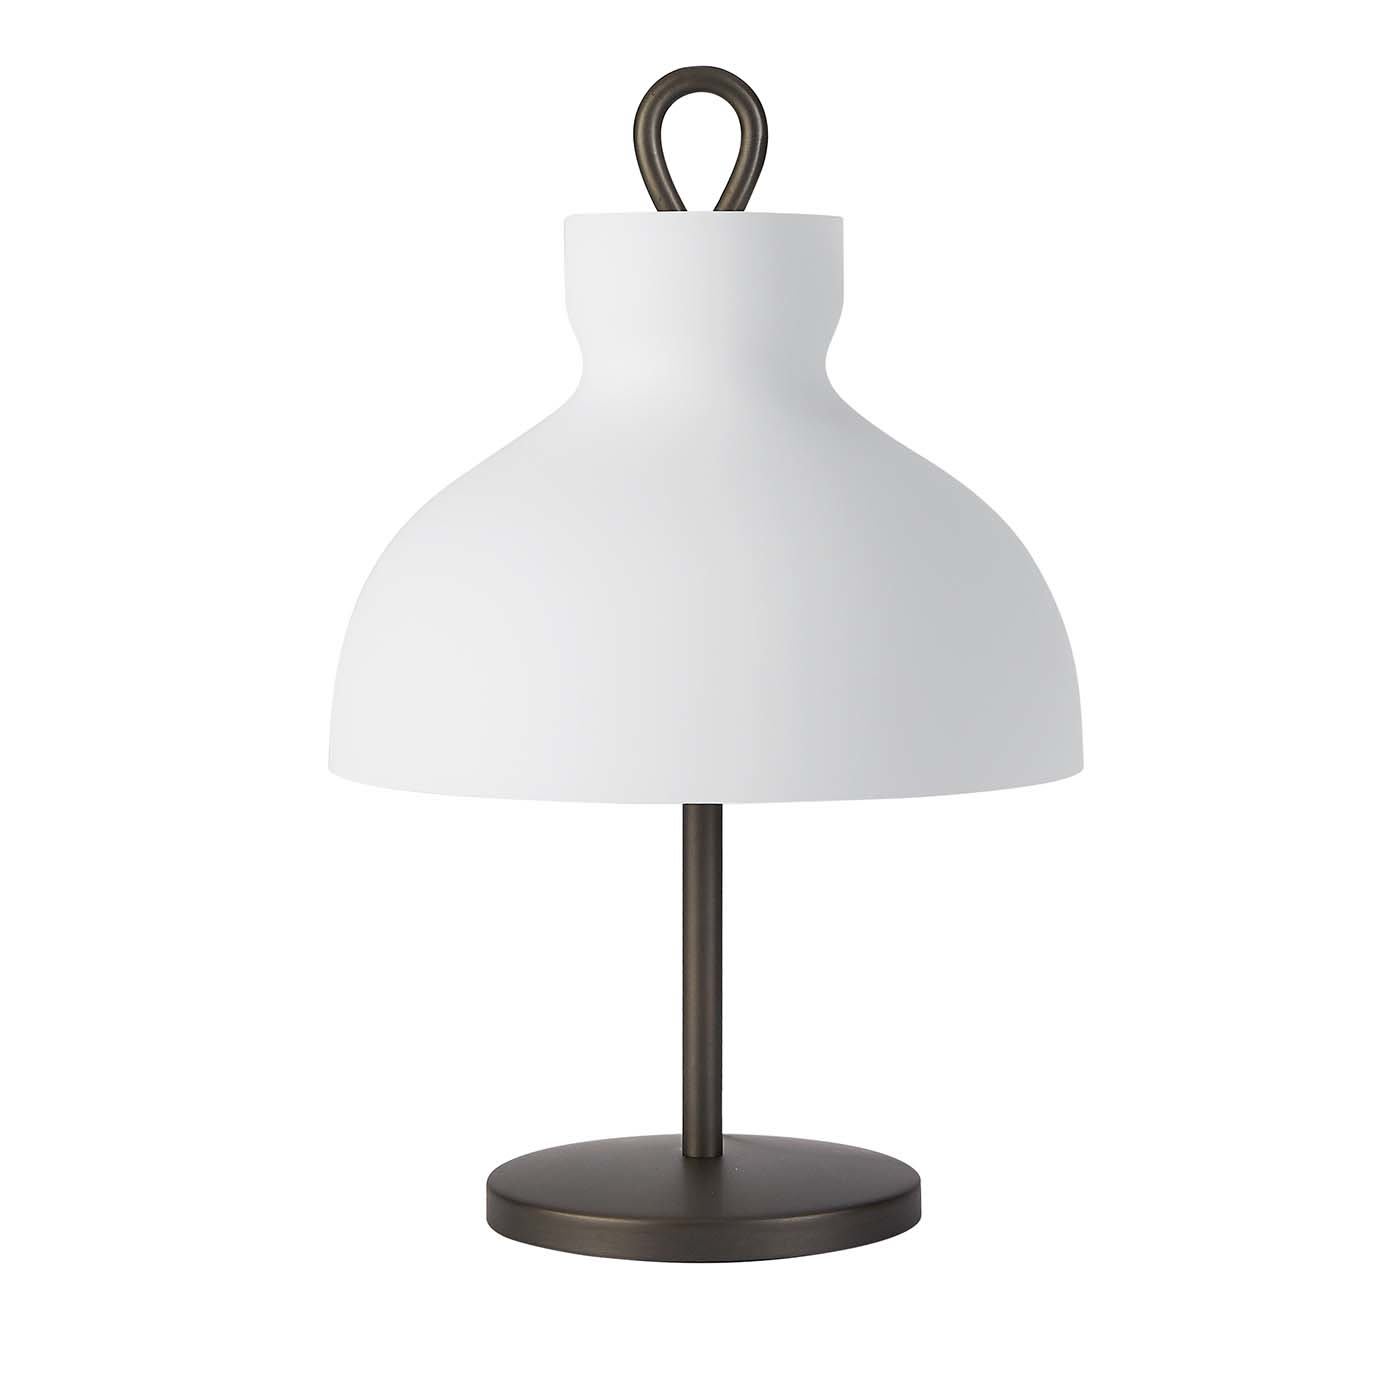 Arenzano Bassa Table Lamp by Ignazio Gardella - Tato